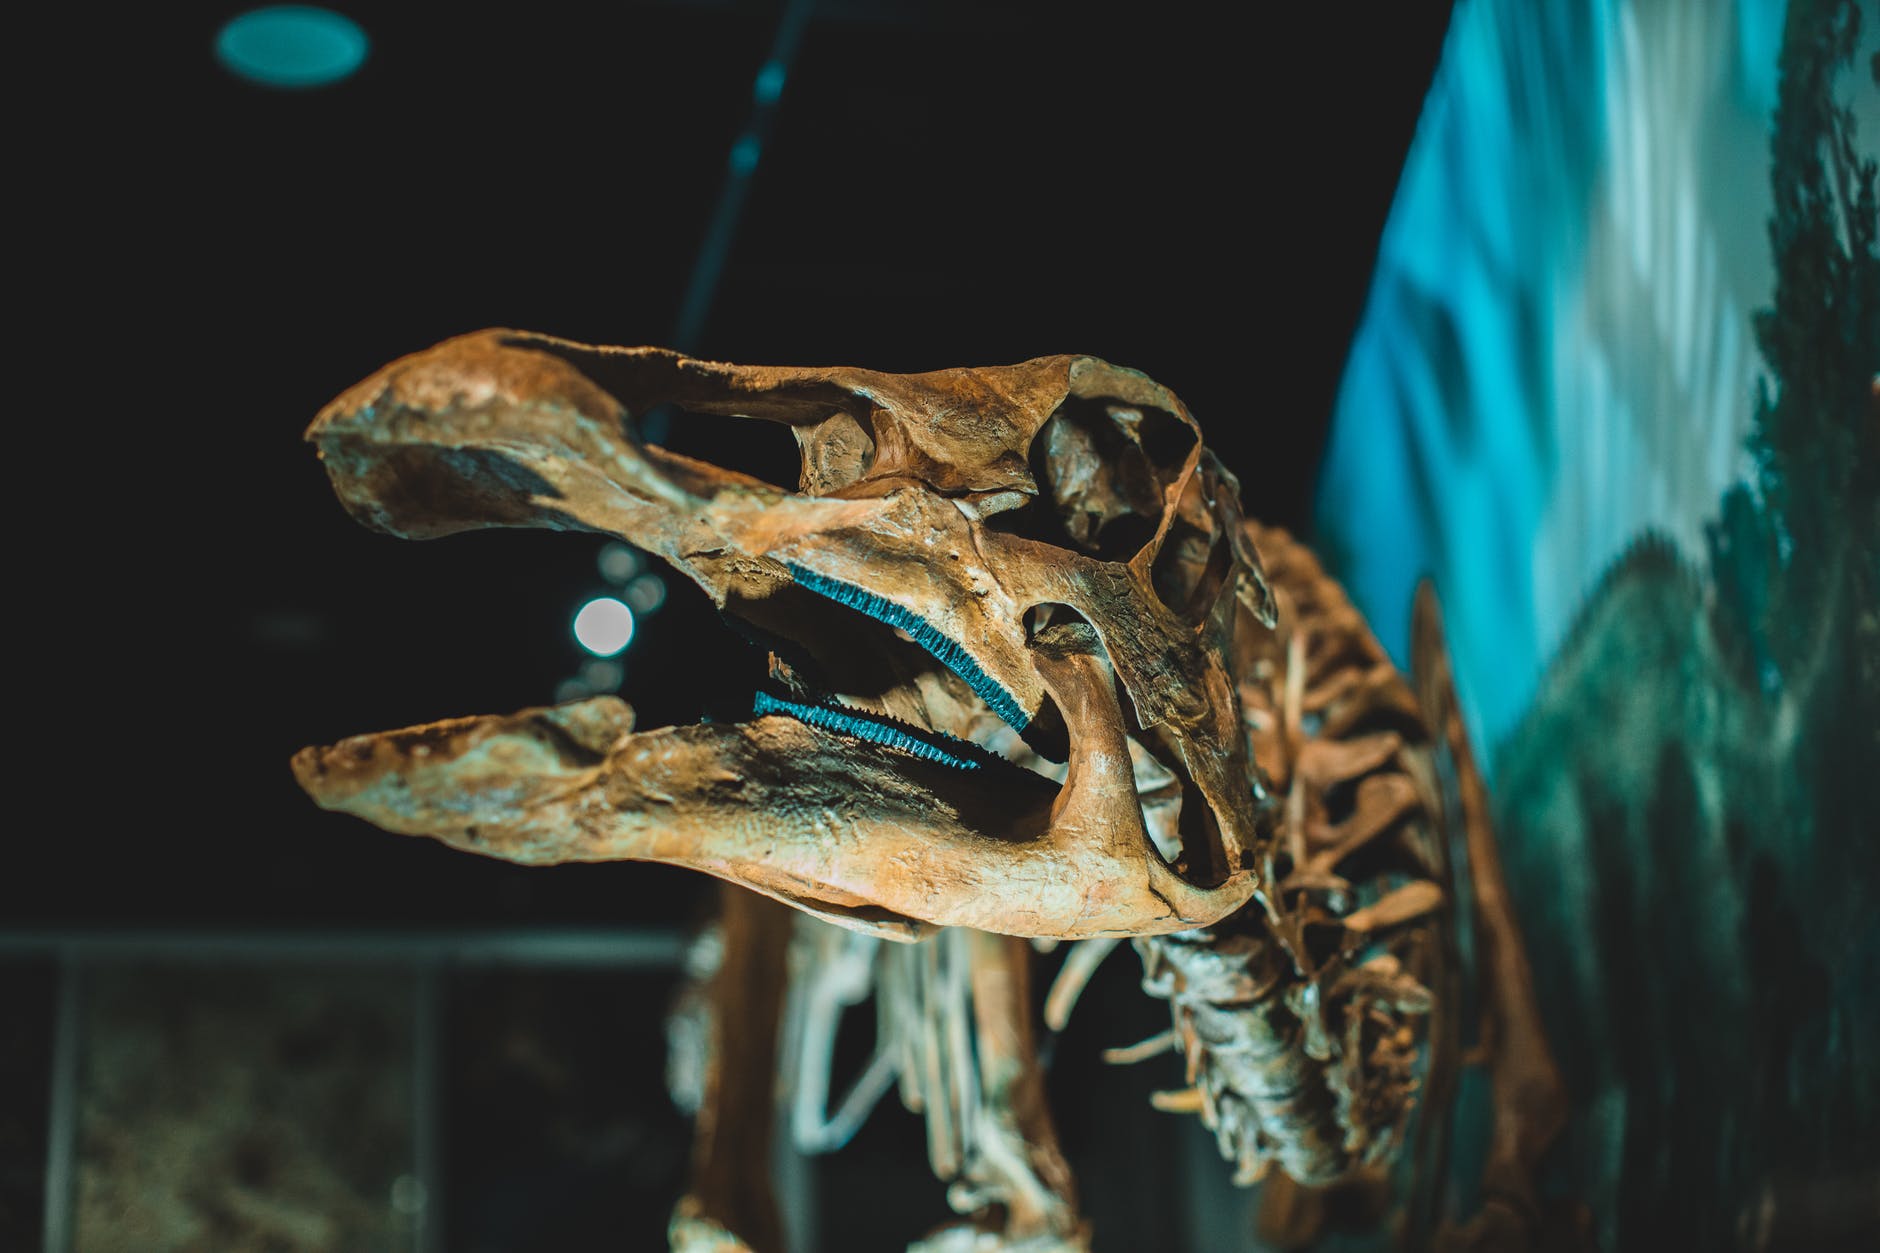 Perna de Tescelossauro foi encontrada nos EUA